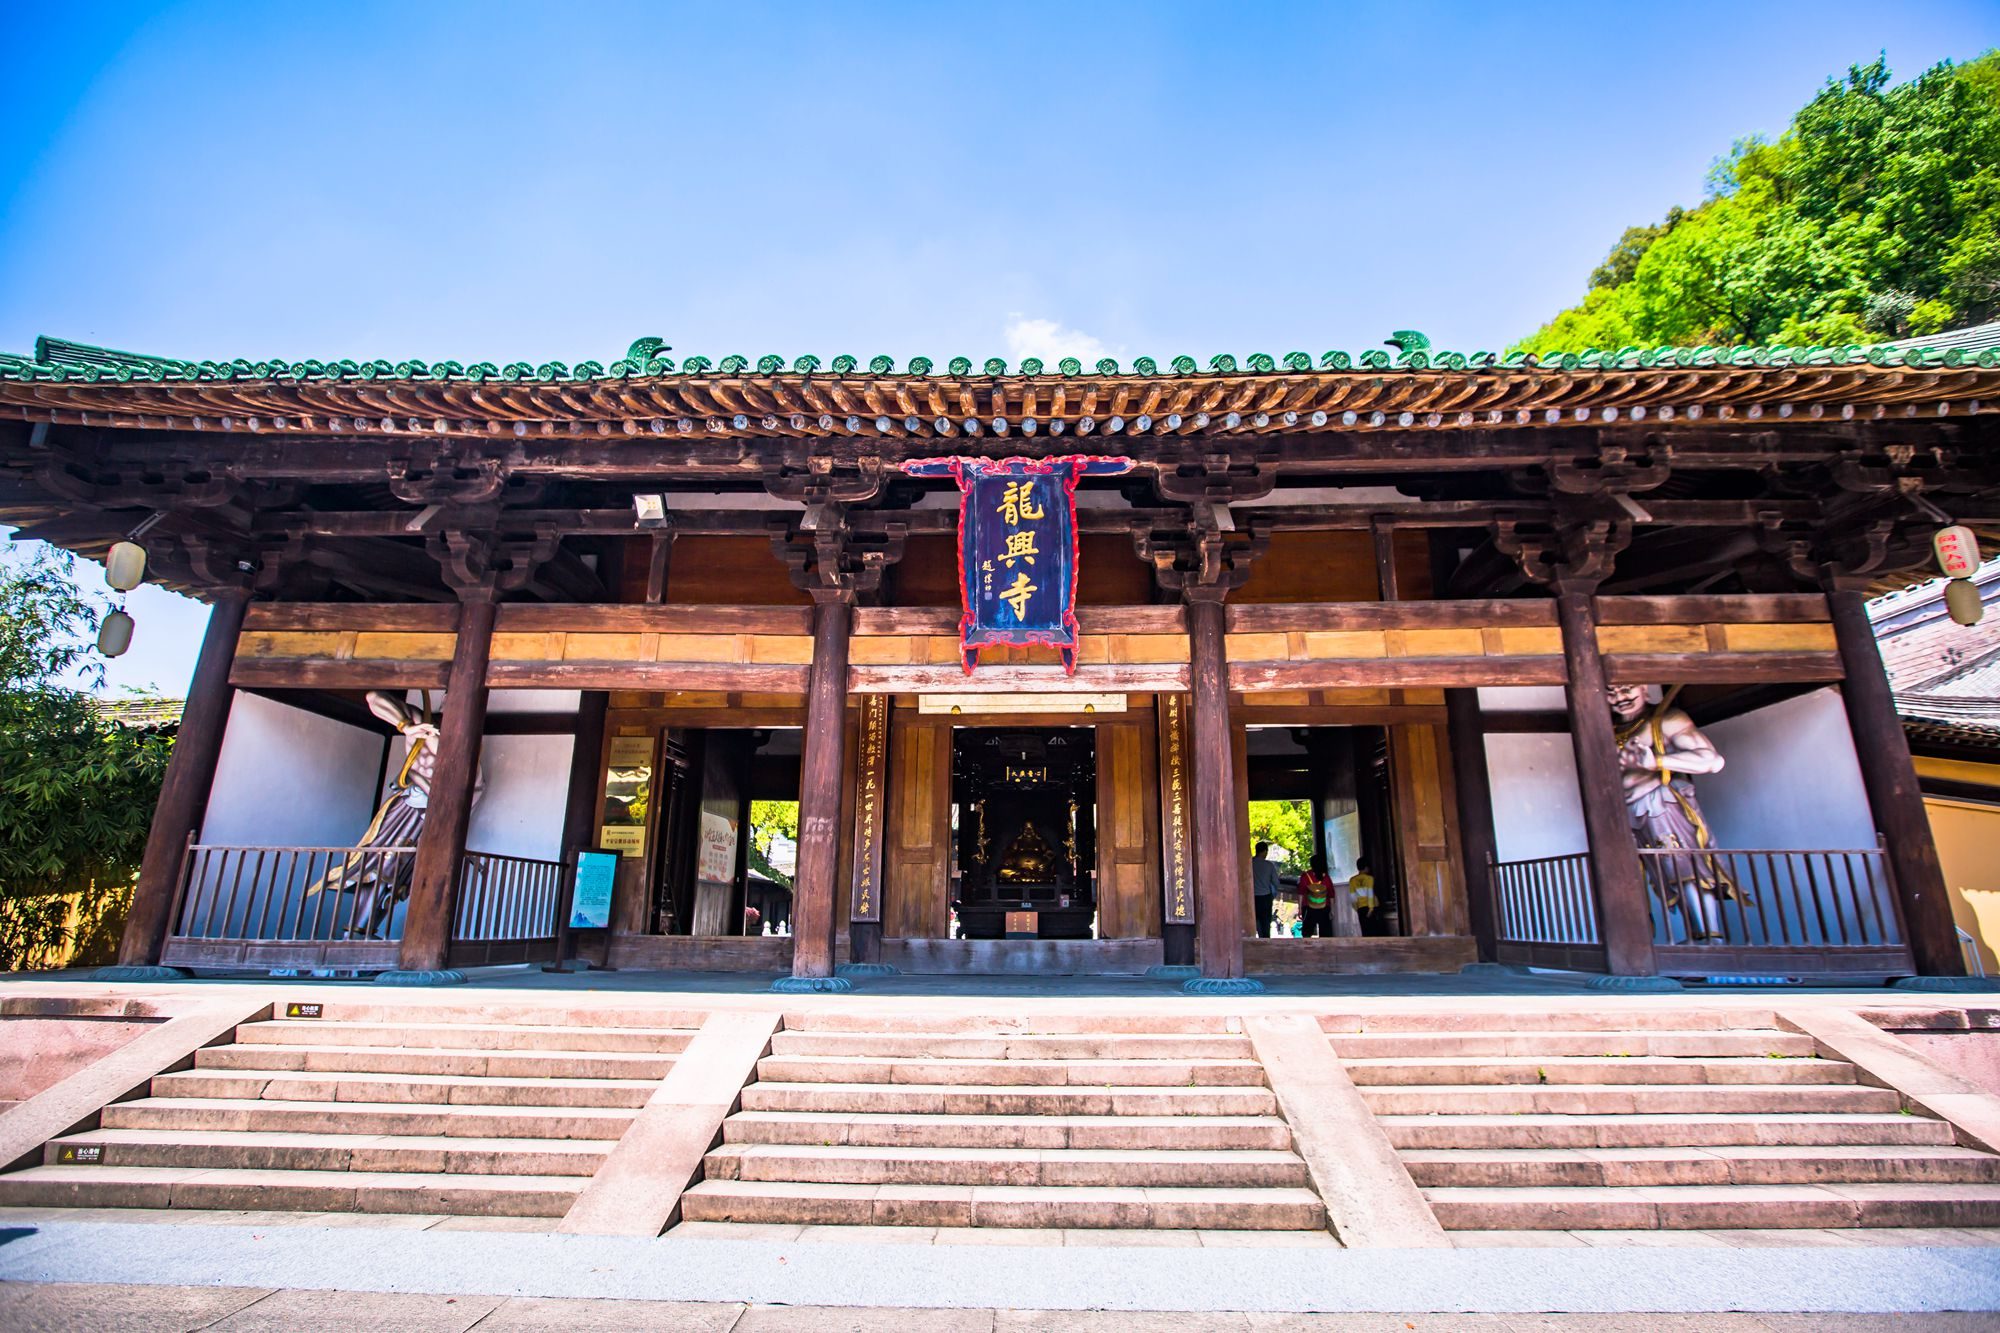 浙江台州有一座龙兴寺,历史悠久,是日本佛教天台宗的重要发祥地